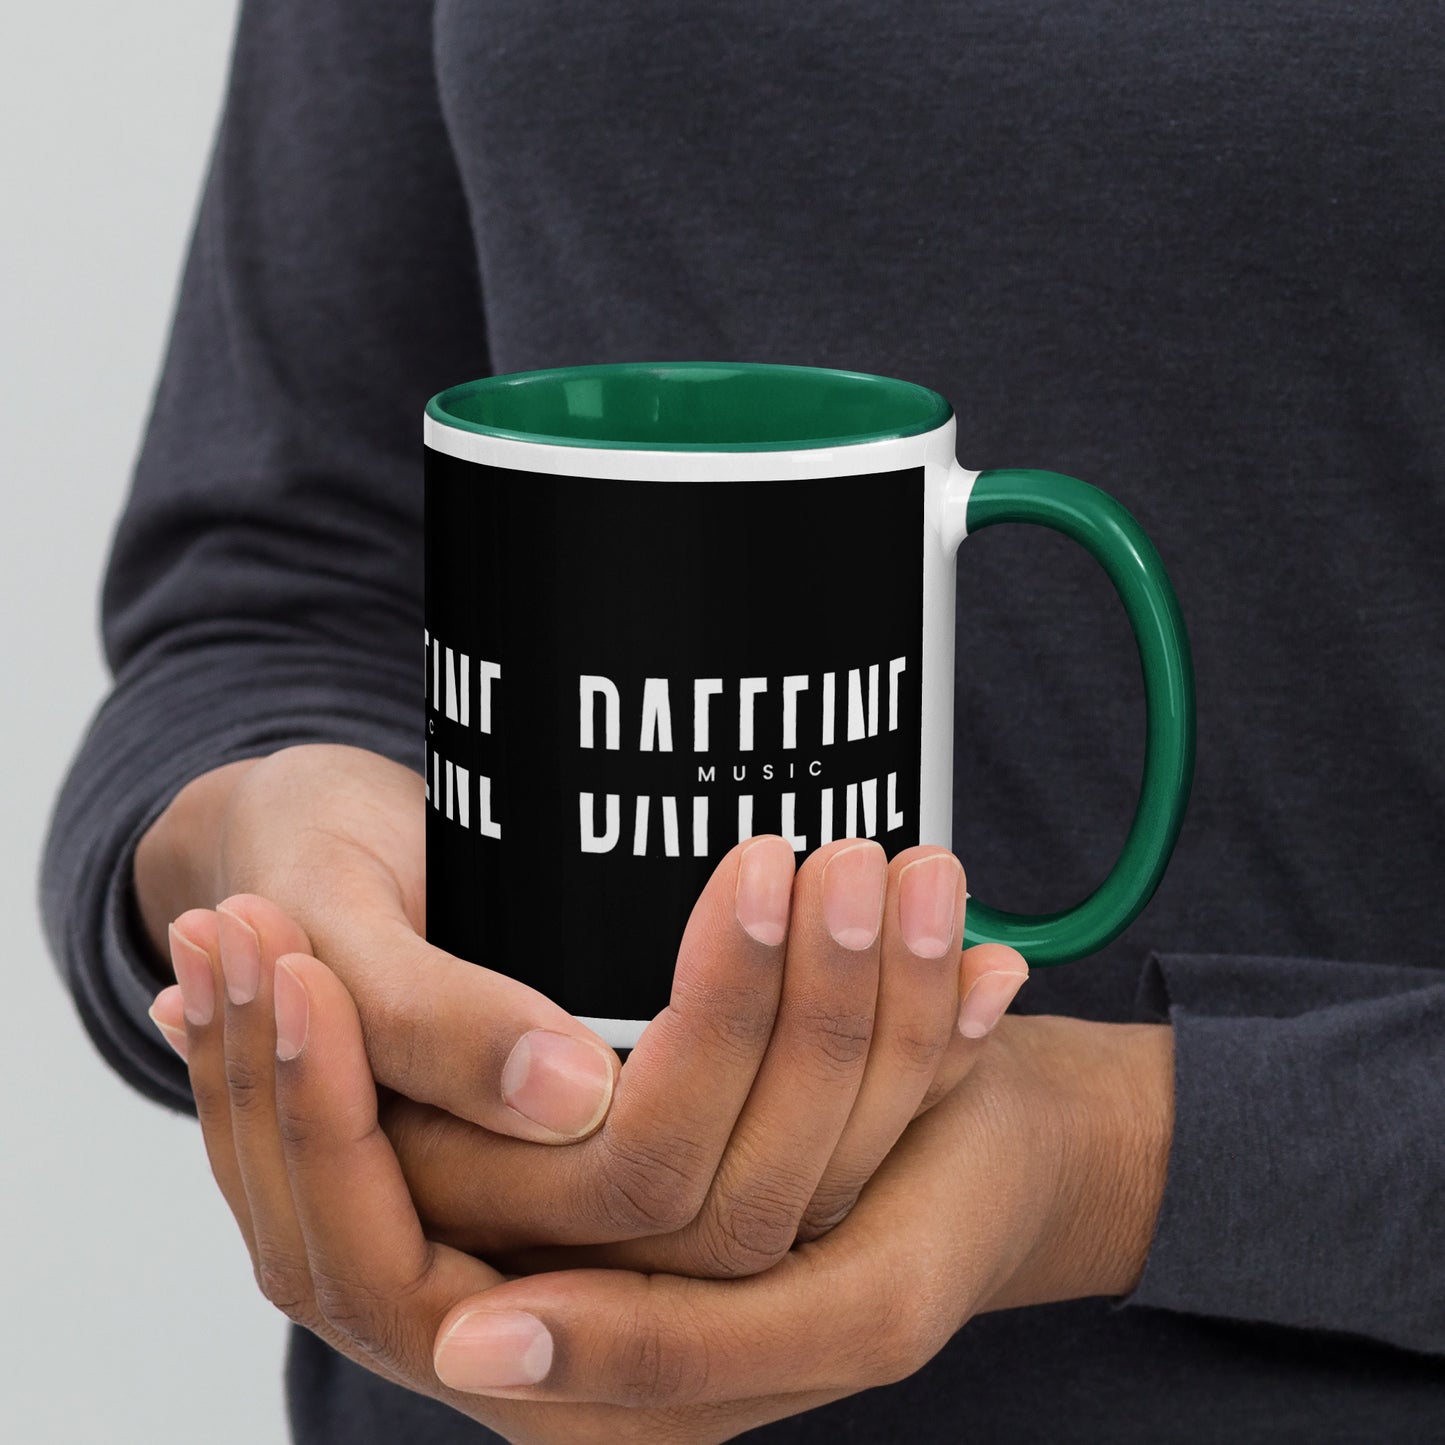 "Daffeine Music" Colored Mug